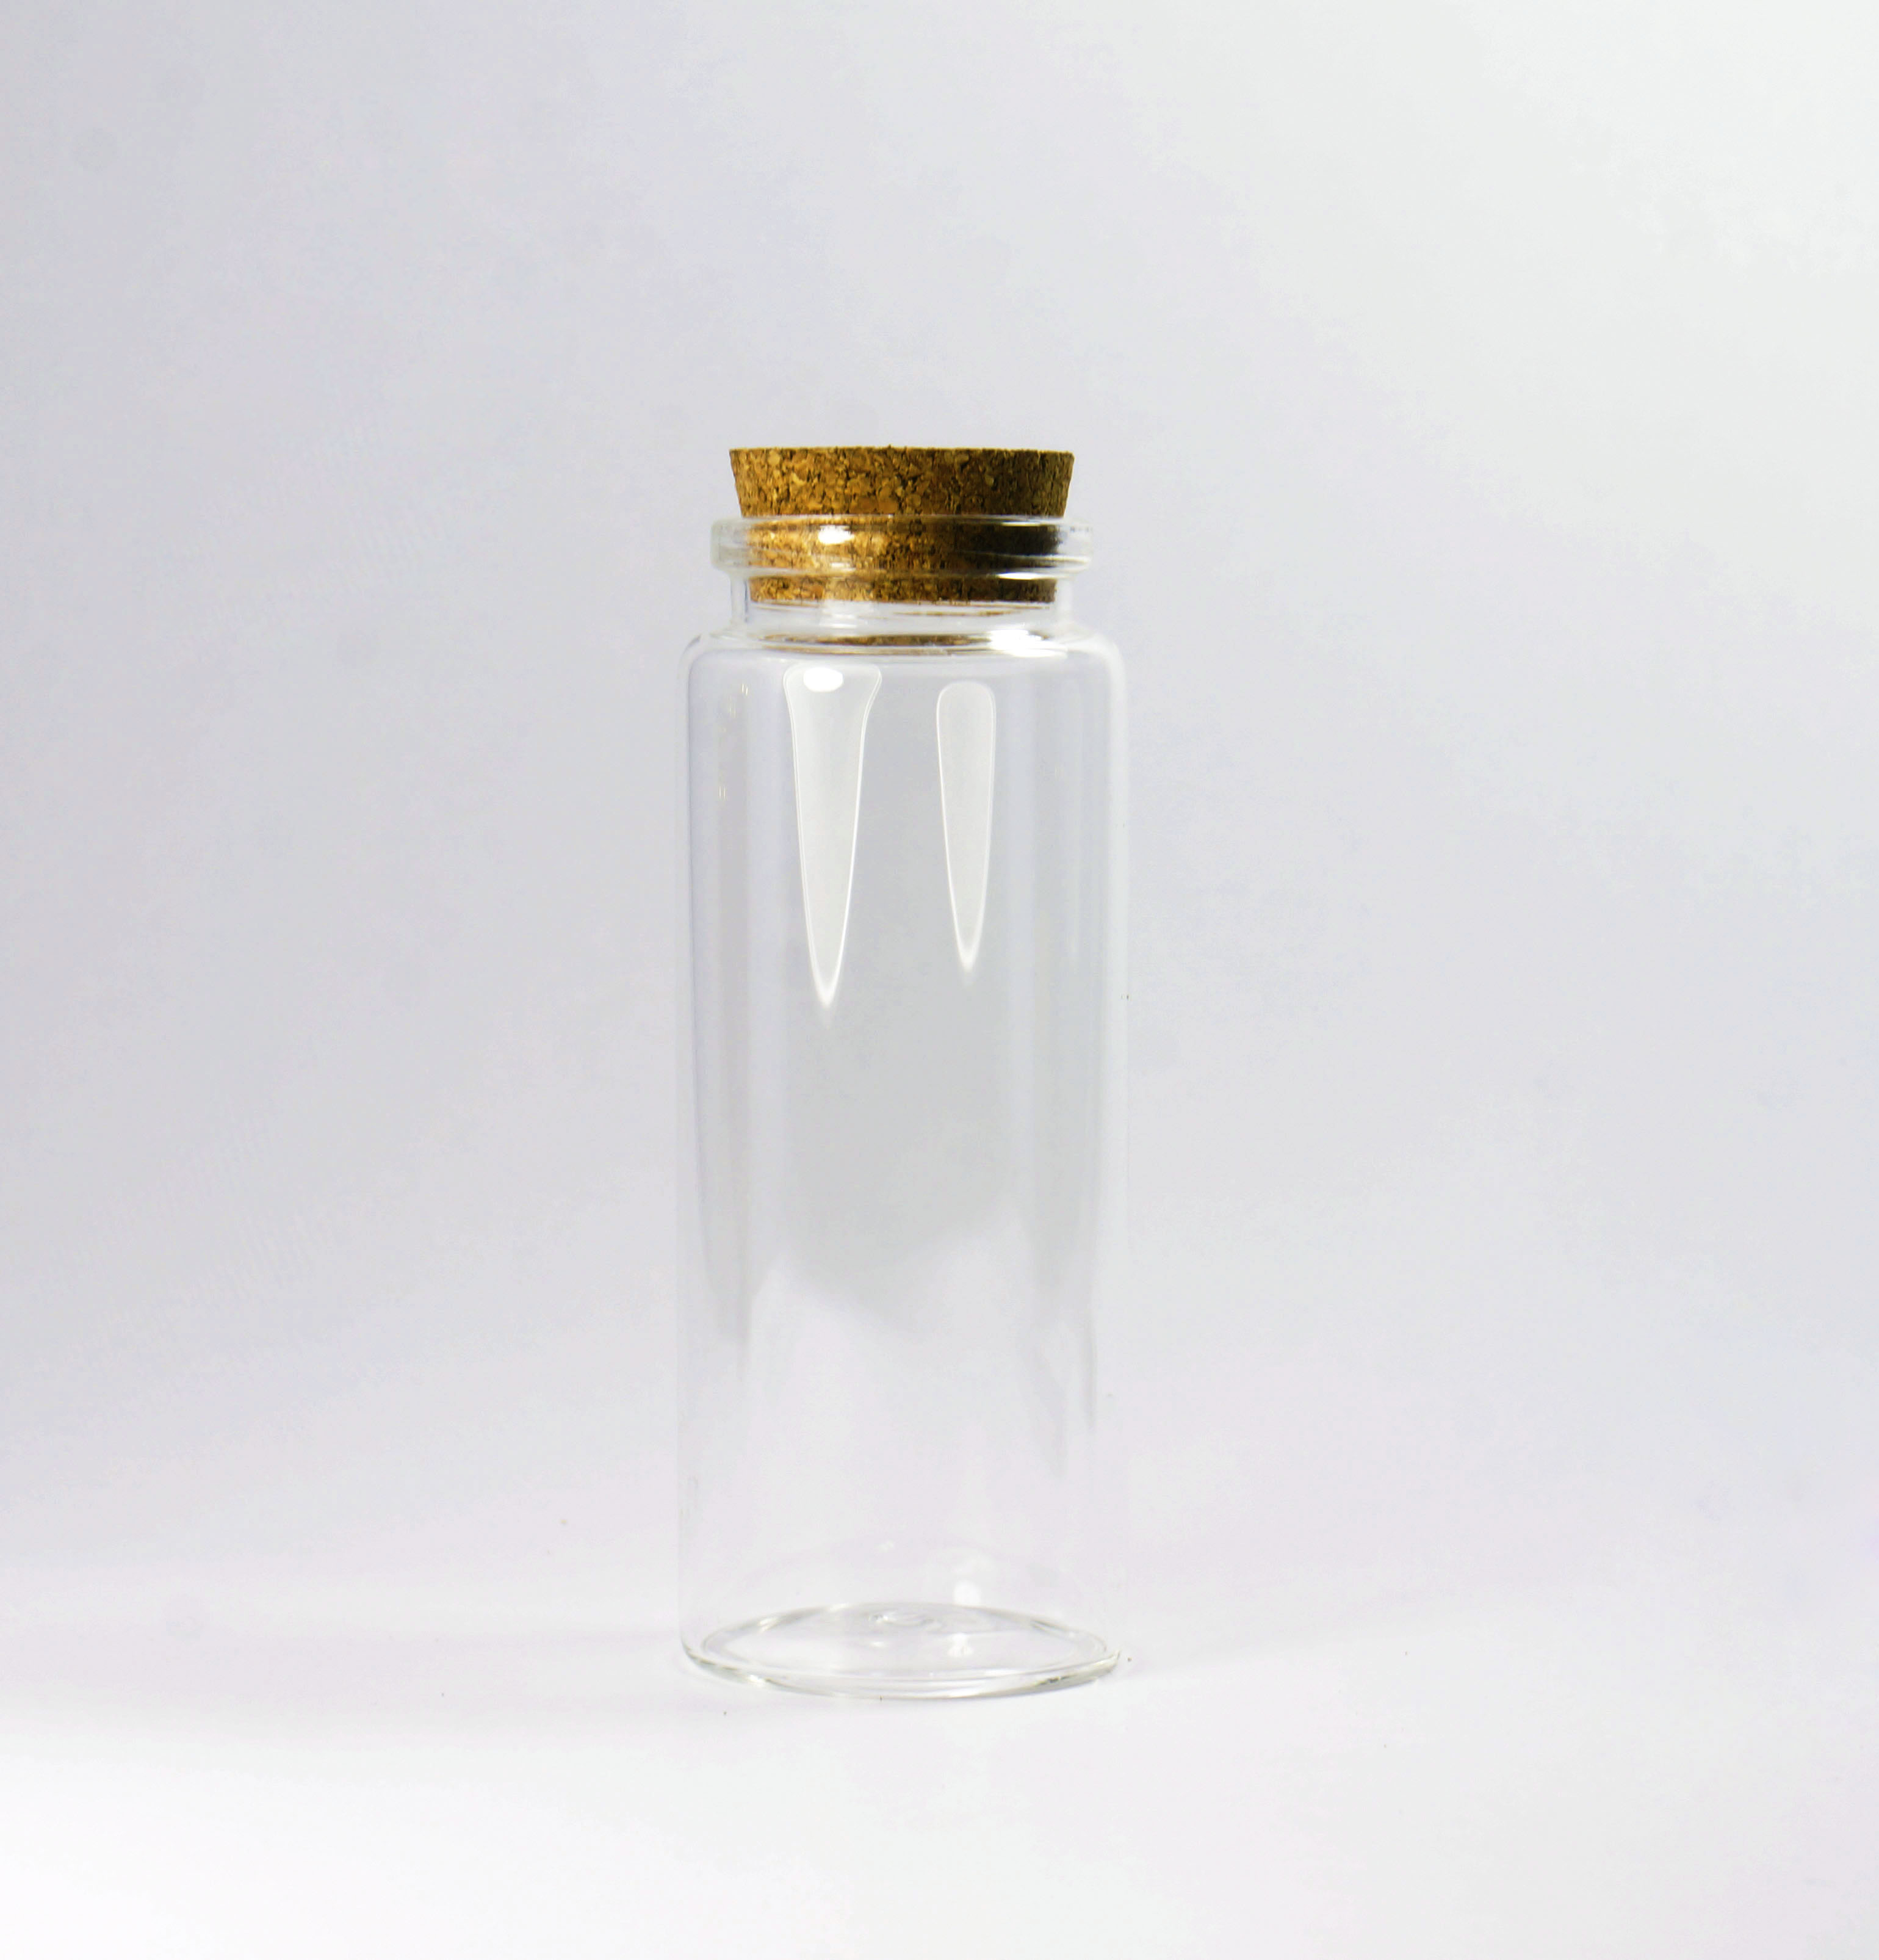 供应茶叶样品展示玻璃瓶直筒瓶 可作为糖果 豆类等展架上盘里外包装展示